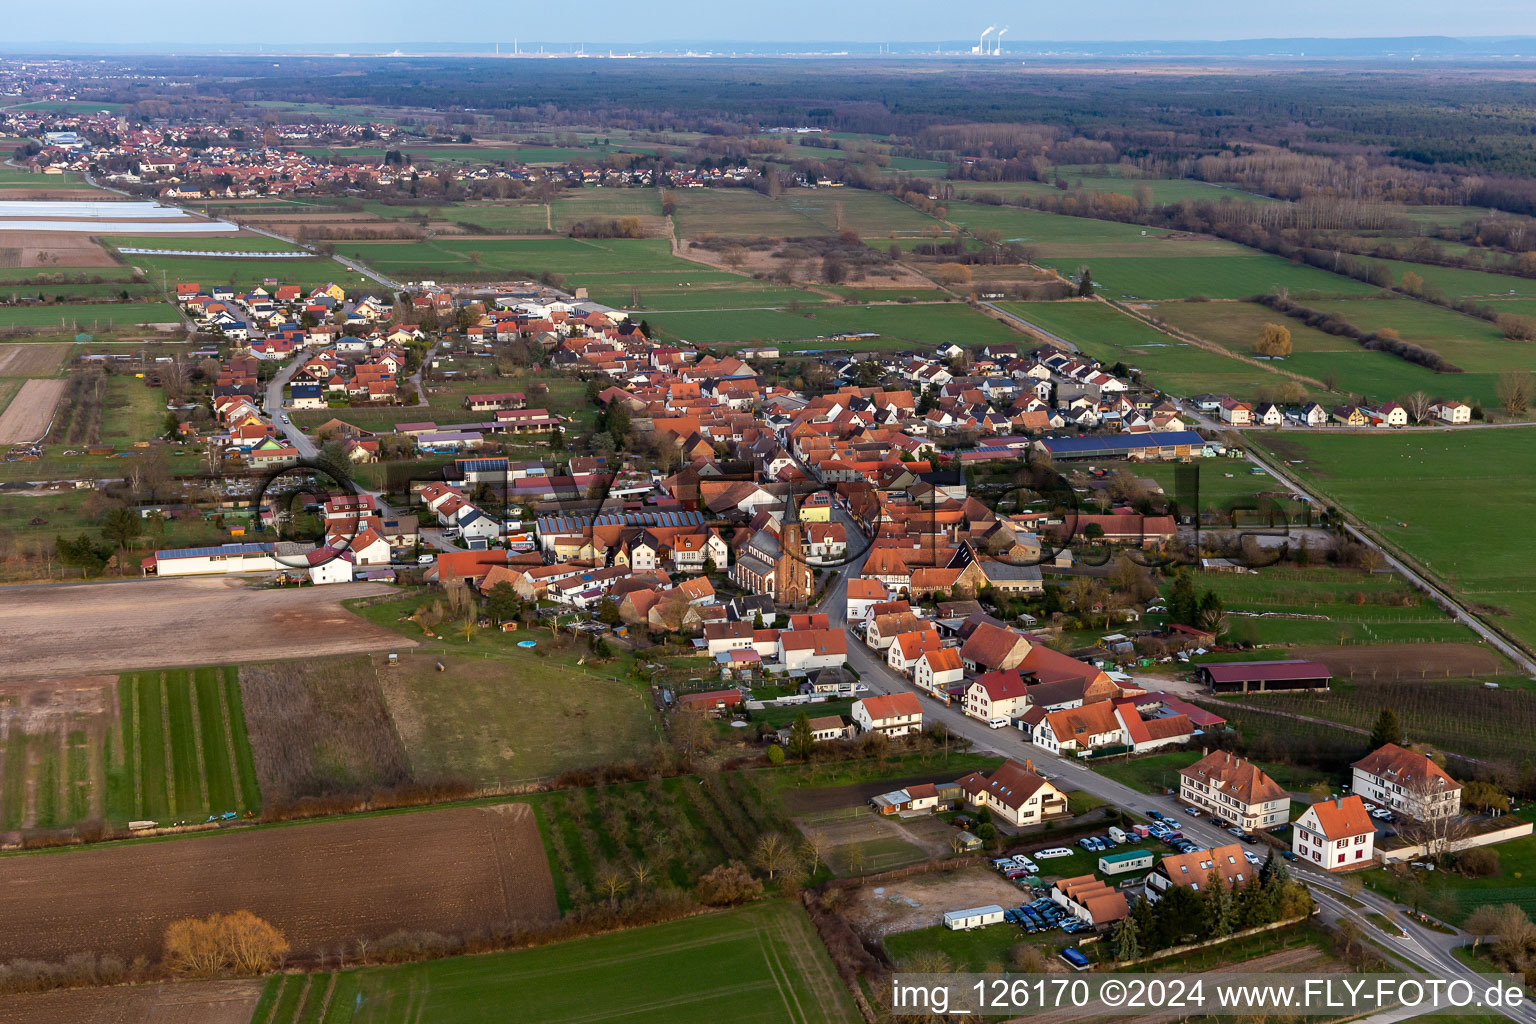 Luftbild von Dorf - Ansicht am Rande von landwirtschaftlichen Feldern und Nutzflächen in Schweighofen im Bundesland Rheinland-Pfalz, Deutschland